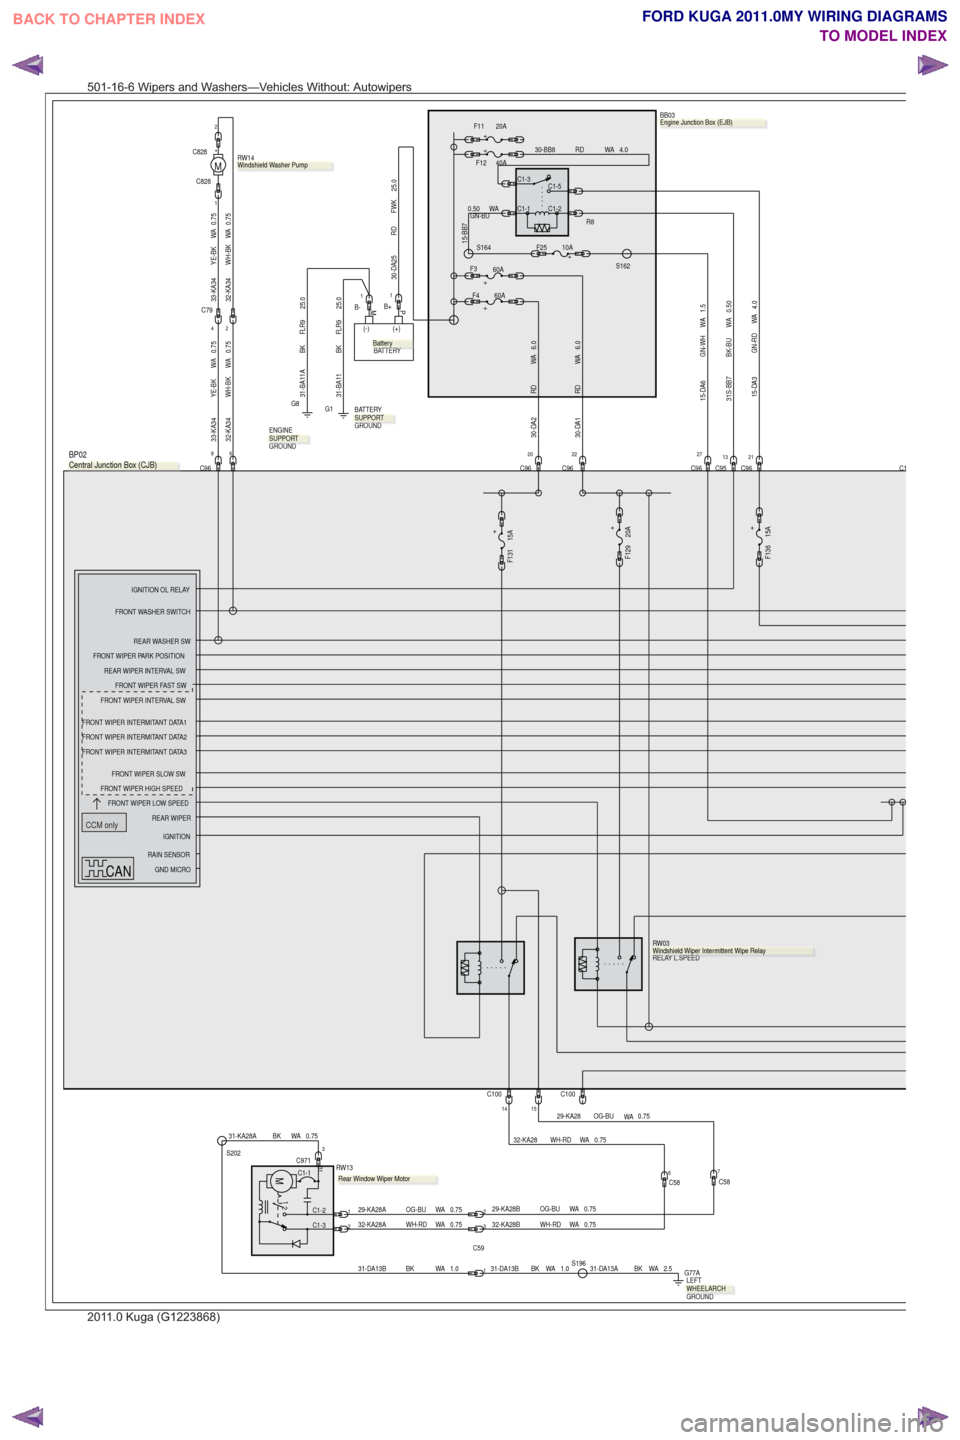 FORD KUGA 2011 1.G Wiring Diagram Manual PDF CCM only
C96
96
+
F129 20A
+
F131 15A
32-KA28 WH-RD WA 0.75
1514C100
C9513C121C96
C1-5
C1-1
C1-3
C1-2R8.
BB03
PM
(+)
(-)
BATTERY
25.0
FWK
RD
30-DA25
1.5
WA
GN-WH
15-DA6
15-DA3 GN-RD WA 4.0
6.0
WA
RD
3